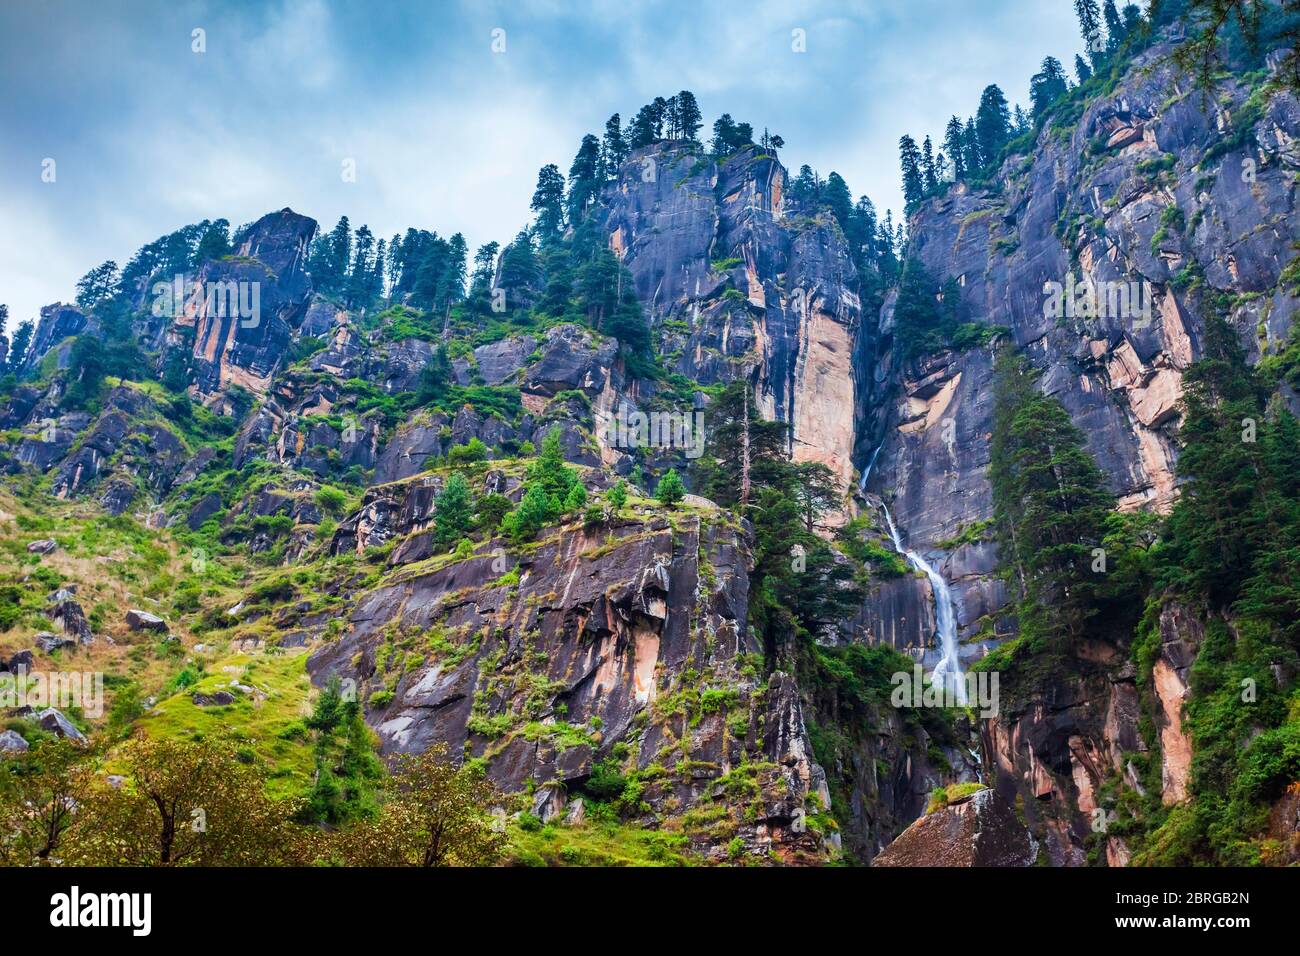 Cascade de Yogini près de Vashisht et du village de Manali dans l'Himalaya, Himachal Pradesh dans le nord de l'Inde Banque D'Images